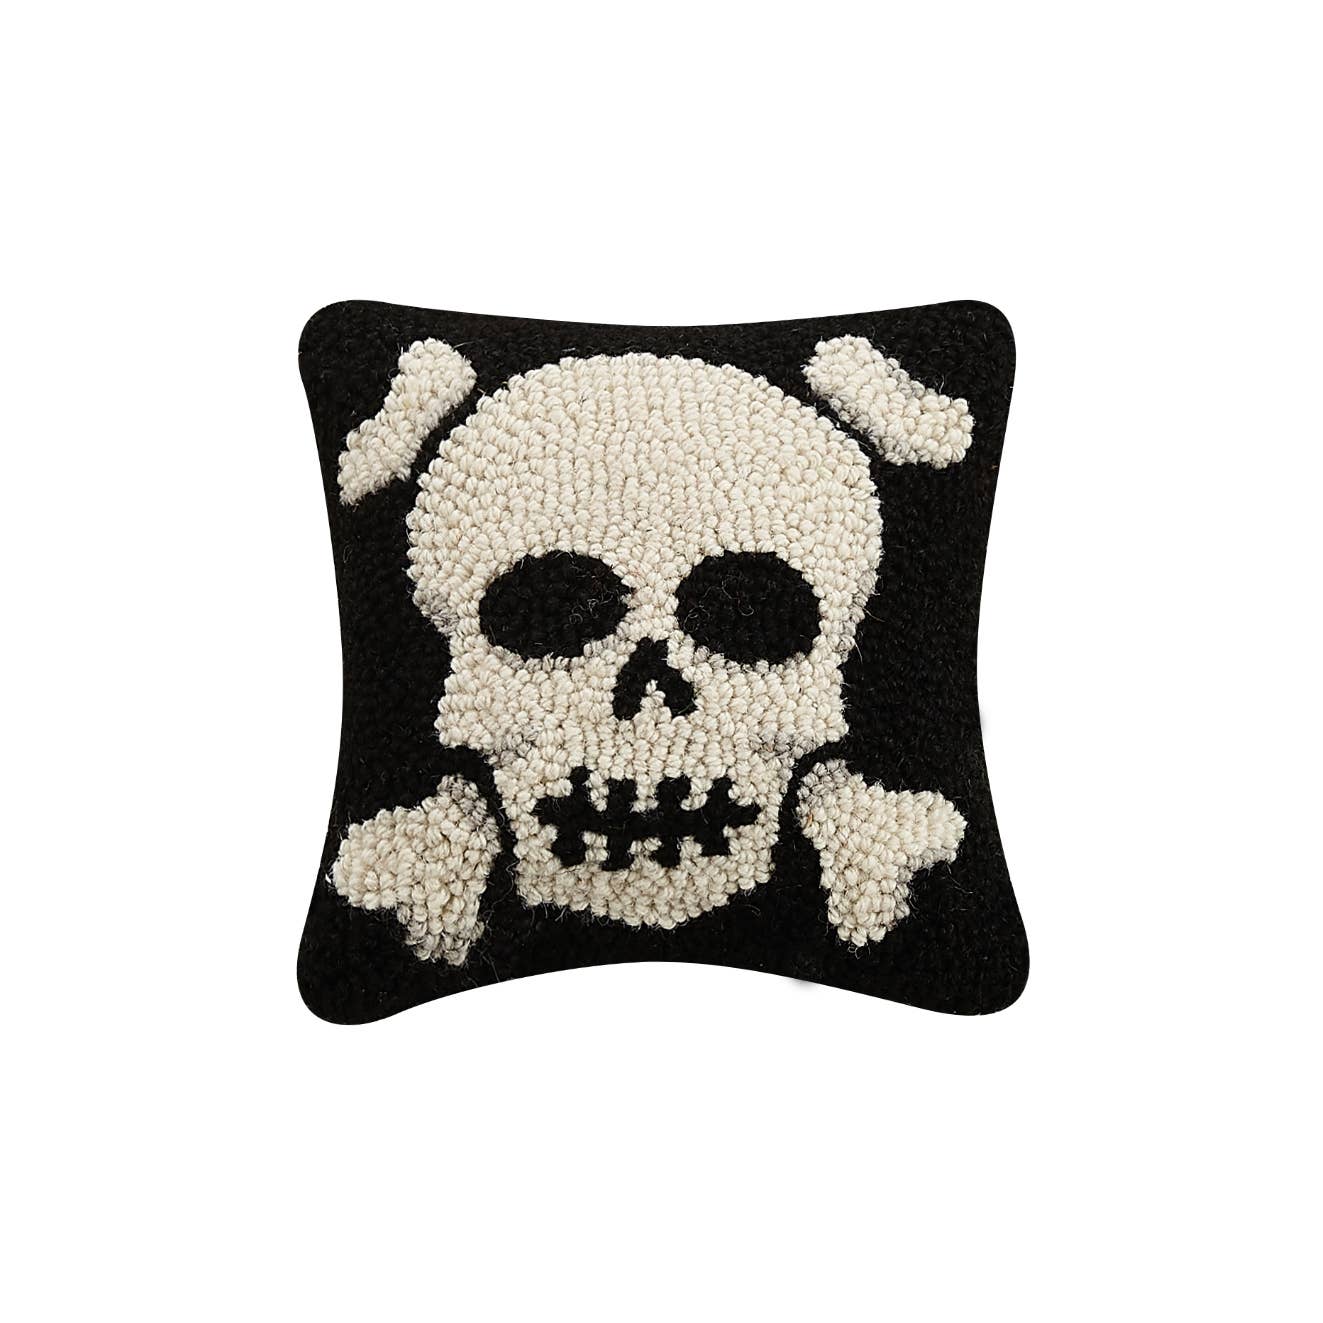 Skull with Crossbones Hook Pillow